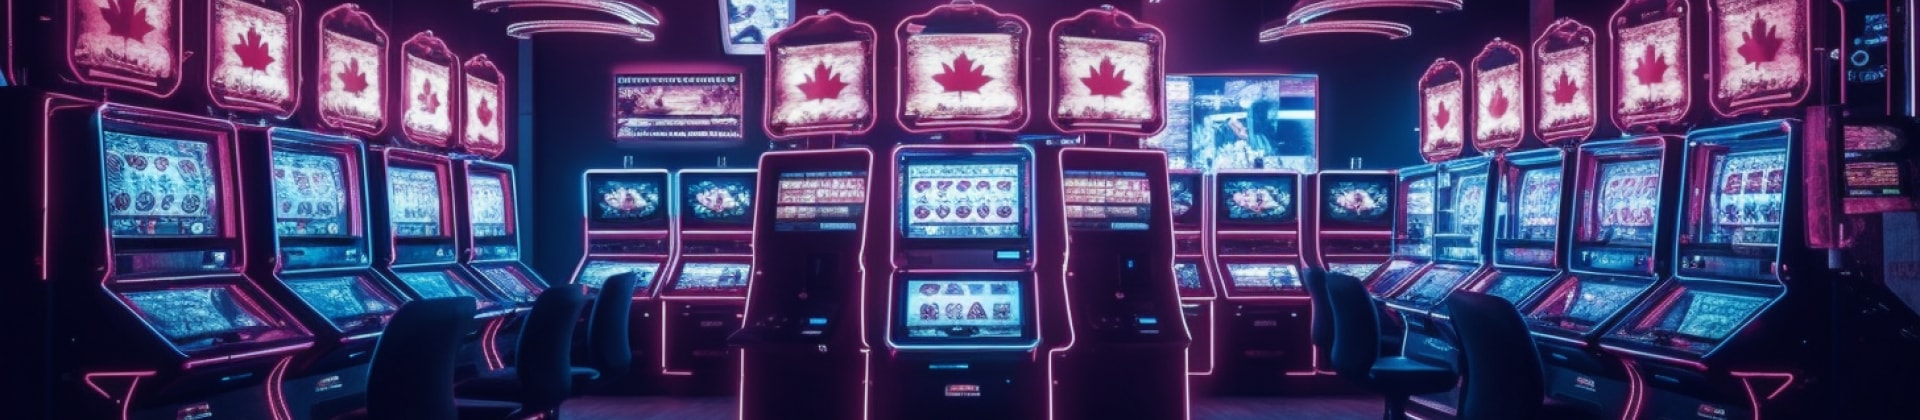 Licencias de casinos btc canadienses